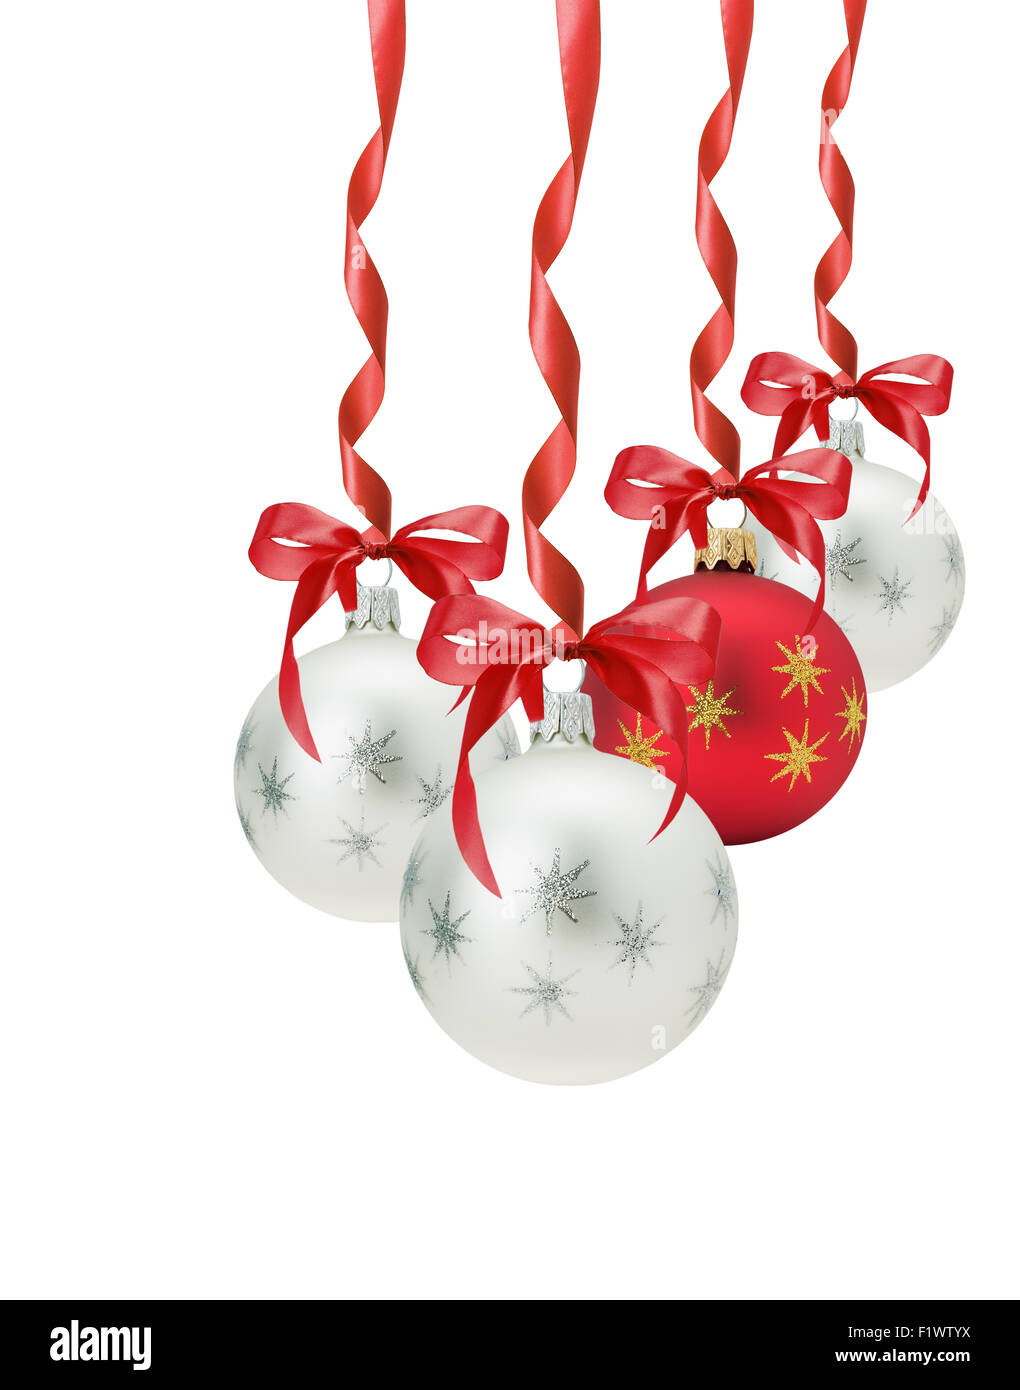 Weihnachtskugeln mit roter Schleife auf dem weißen Hintergrund isoliert. Stockfoto